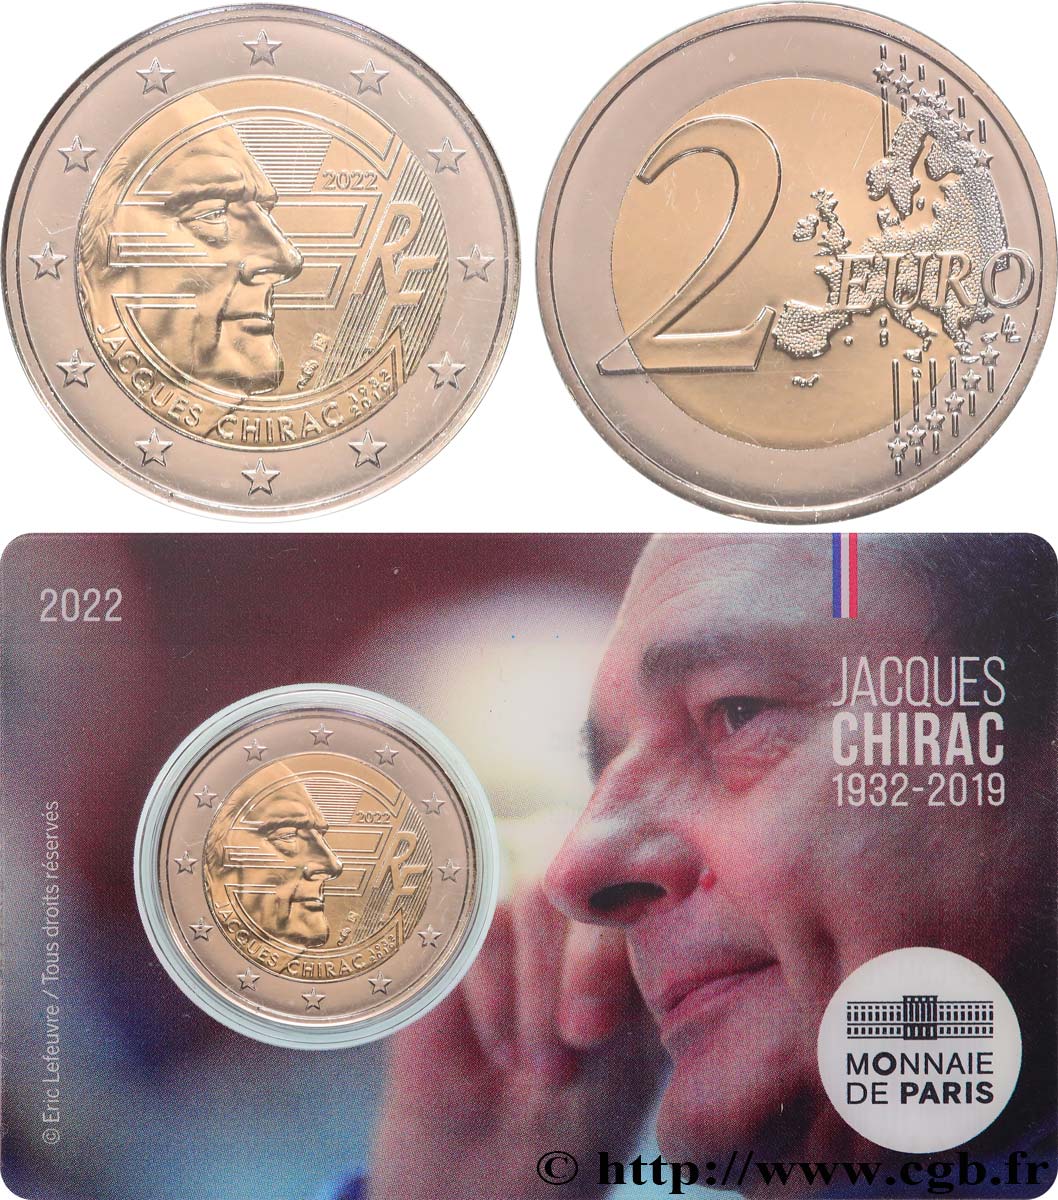 Jacques Chirac 2 Euros Commémo - UNC France 2022